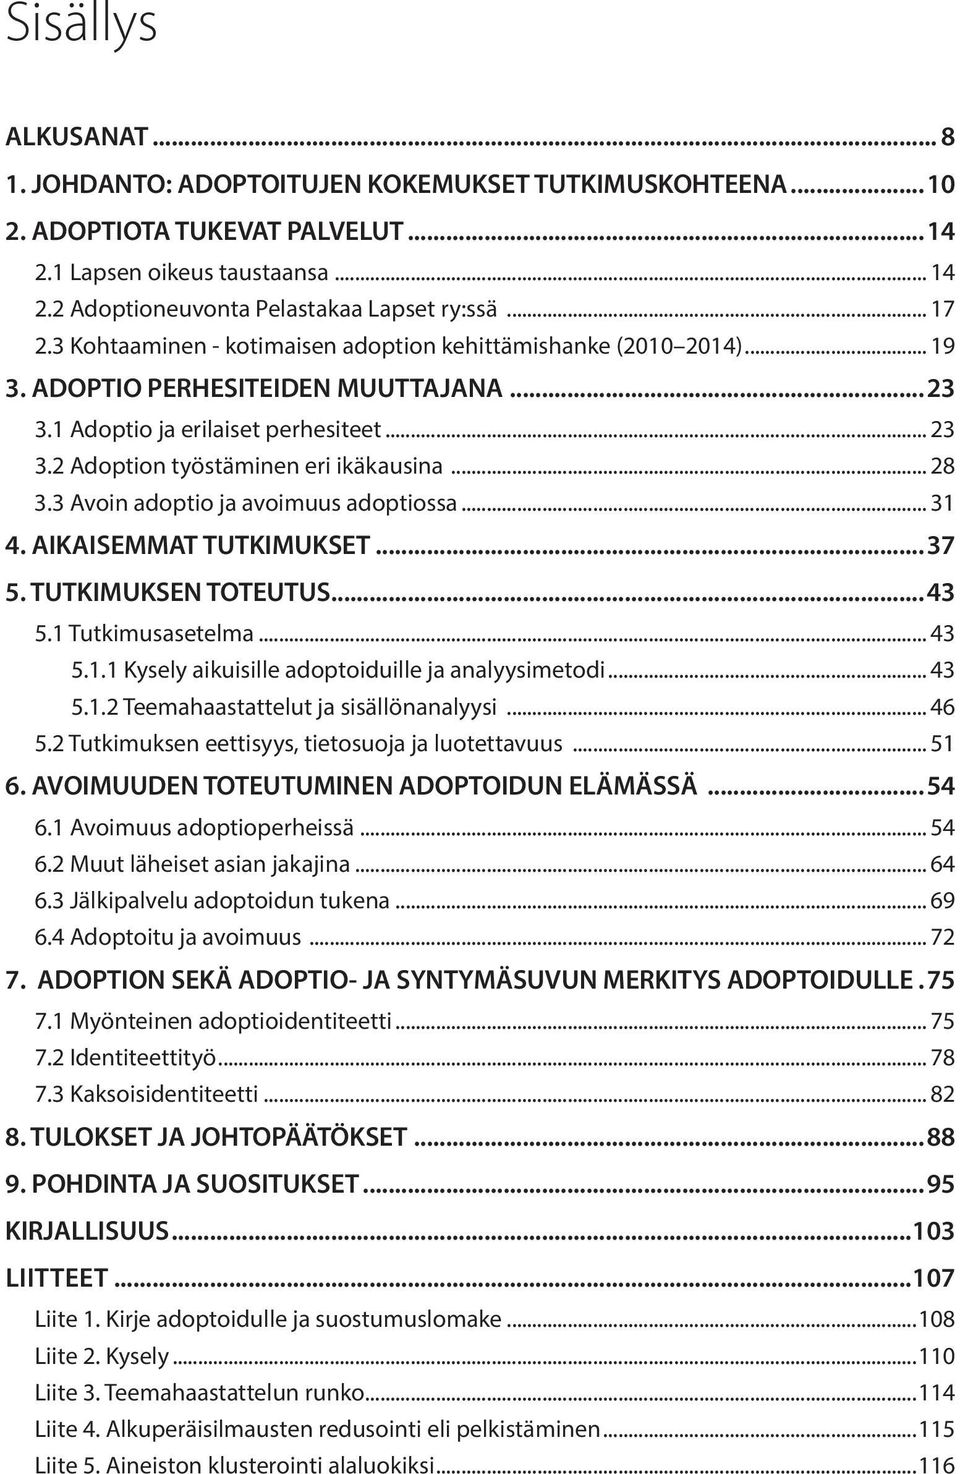 2 Adoption työstäminen eri ikäkausina... 28 3.3 Avoin adoptio ja avoimuus adoptiossa... 31 4. AIKAISEMMAT TUTKIMUKSET...37 5. TUTKIMUKSEN TOTEUTUS...43 5.1 Tutkimusasetelma... 43 5.1.1 Kysely aikuisille adoptoiduille ja analyysimetodi.